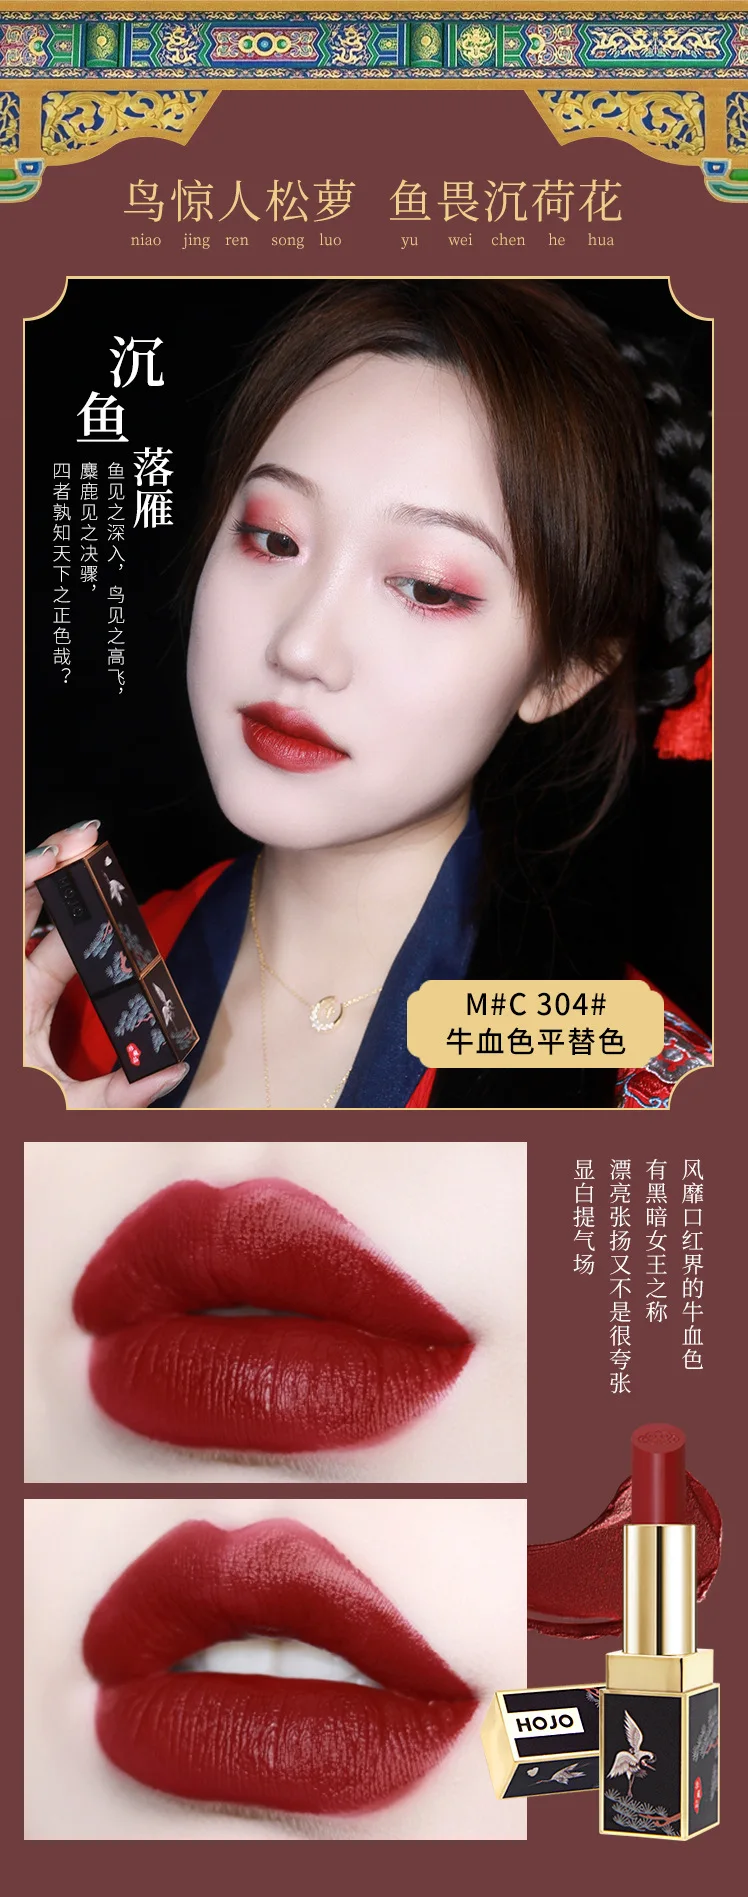 Hojo китайский Ретро стиль матовая губная помада 5 цветов увлажнитель длительного действия губ batom сексуальный темно-красный яркий бархат губная помада BN140